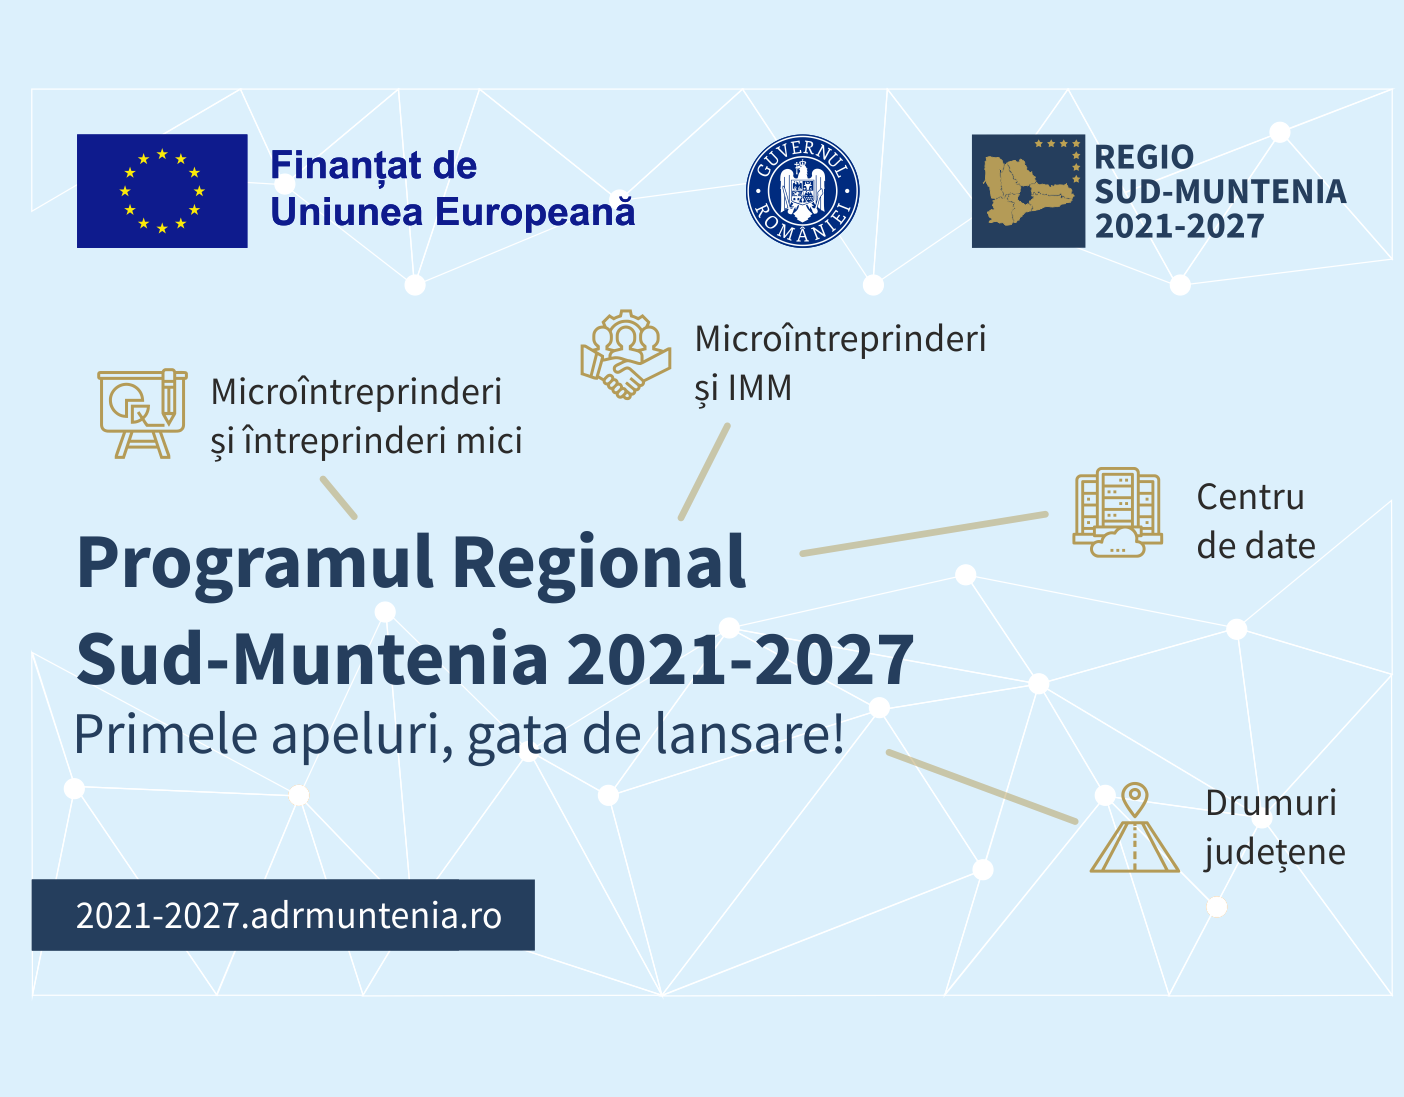 Primele apeluri de proiecte - gata de lansare în Regiunea Sud-Muntenia!